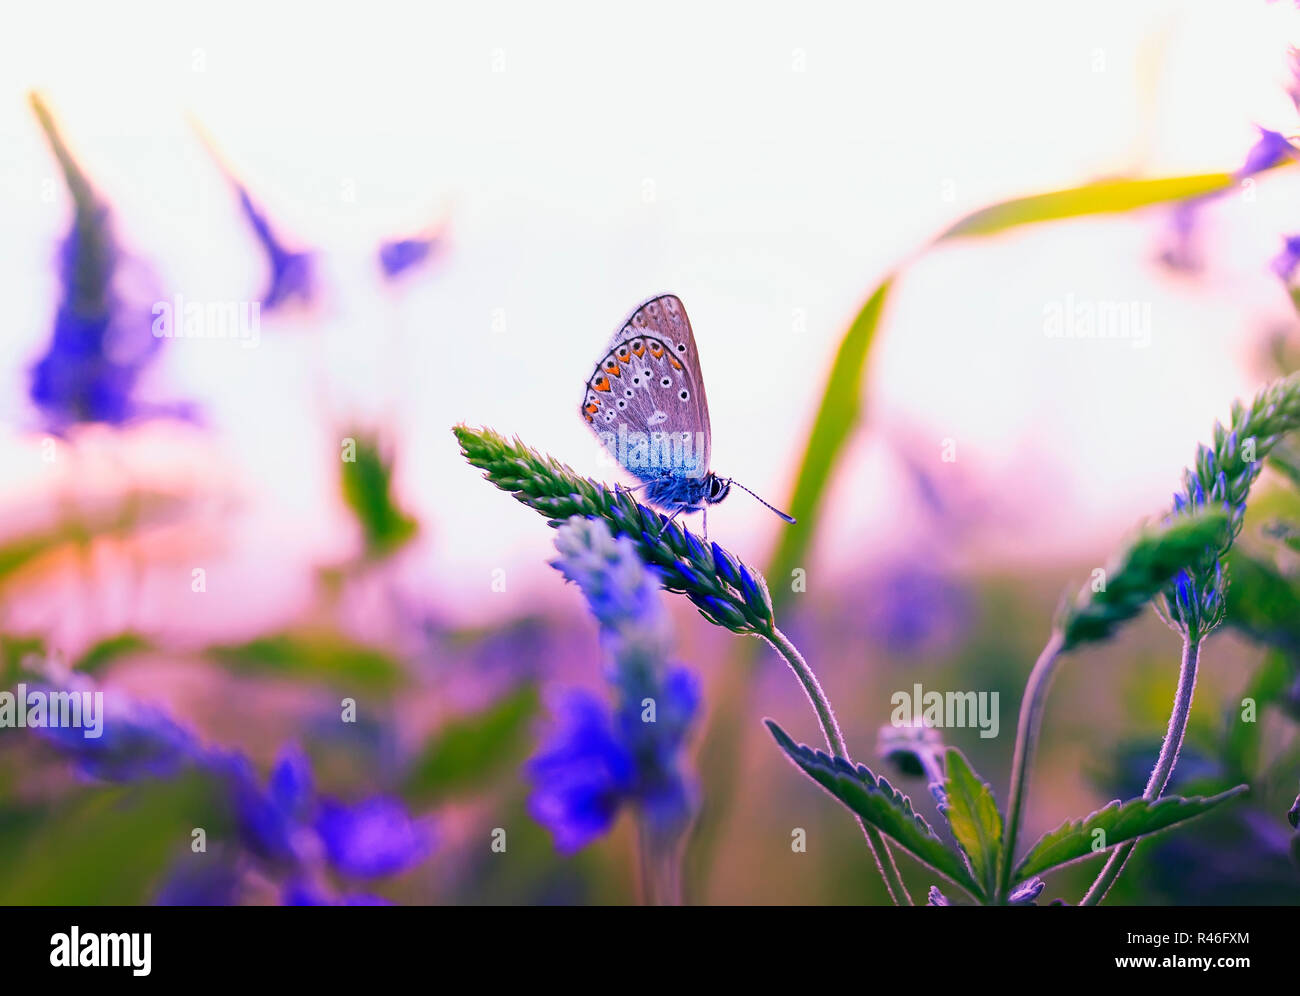 Schöne kleine Schmetterling Taube flog auf einer Sommerwiese und sitzt durch die blauen und violetten Blüten und die Strahlen der untergehenden Sonne warm Sonne umgeben Stockfoto